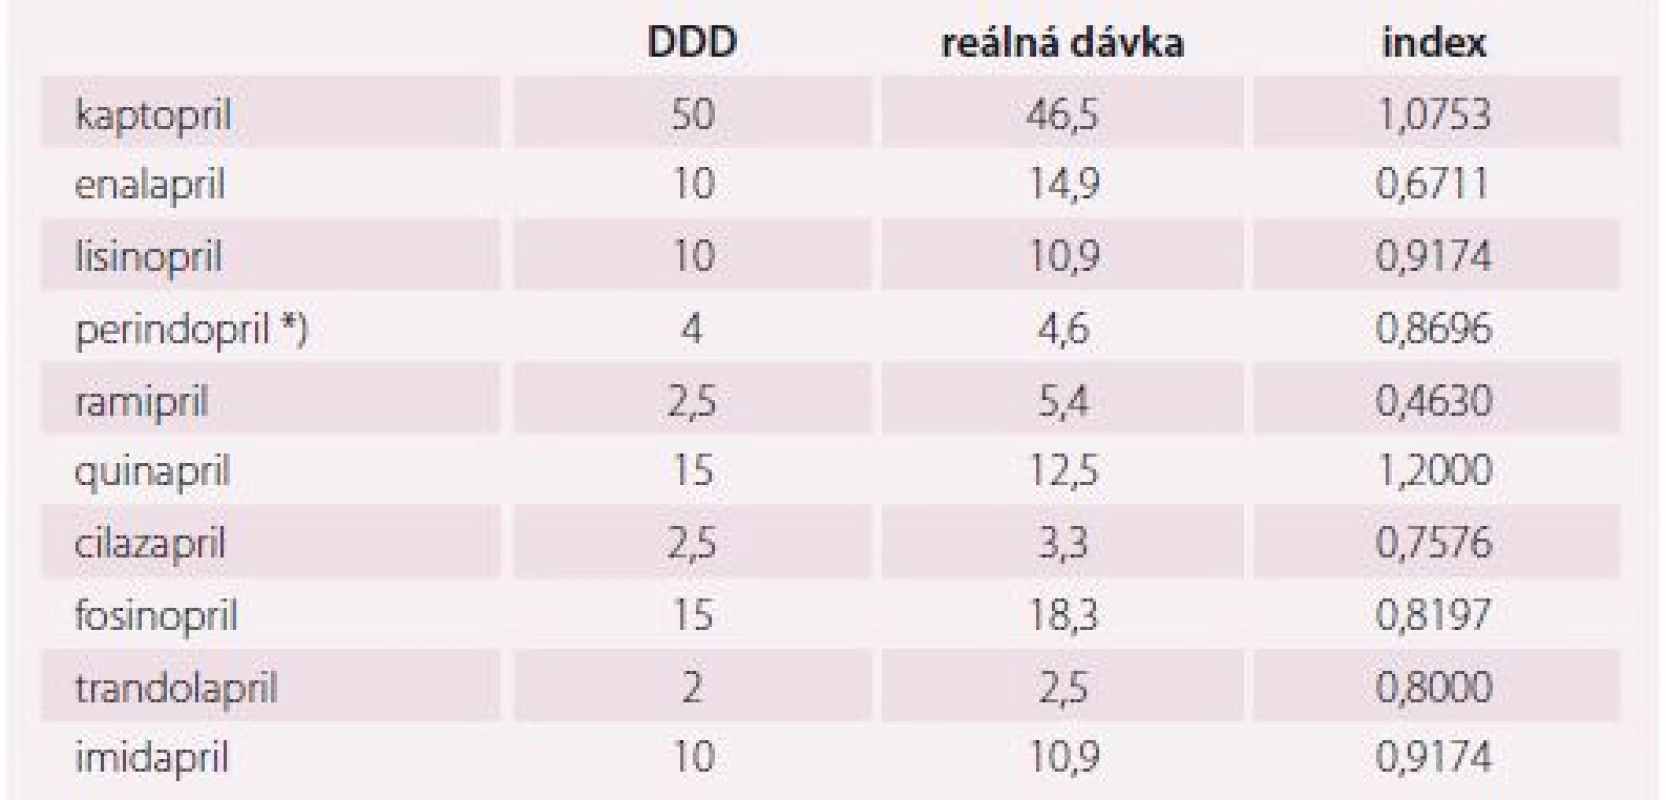 Porovnání hodnot DDD (definovaná denní dávka) stanovených WHO a dávek
z běžné praxe ze studie ESA [16].